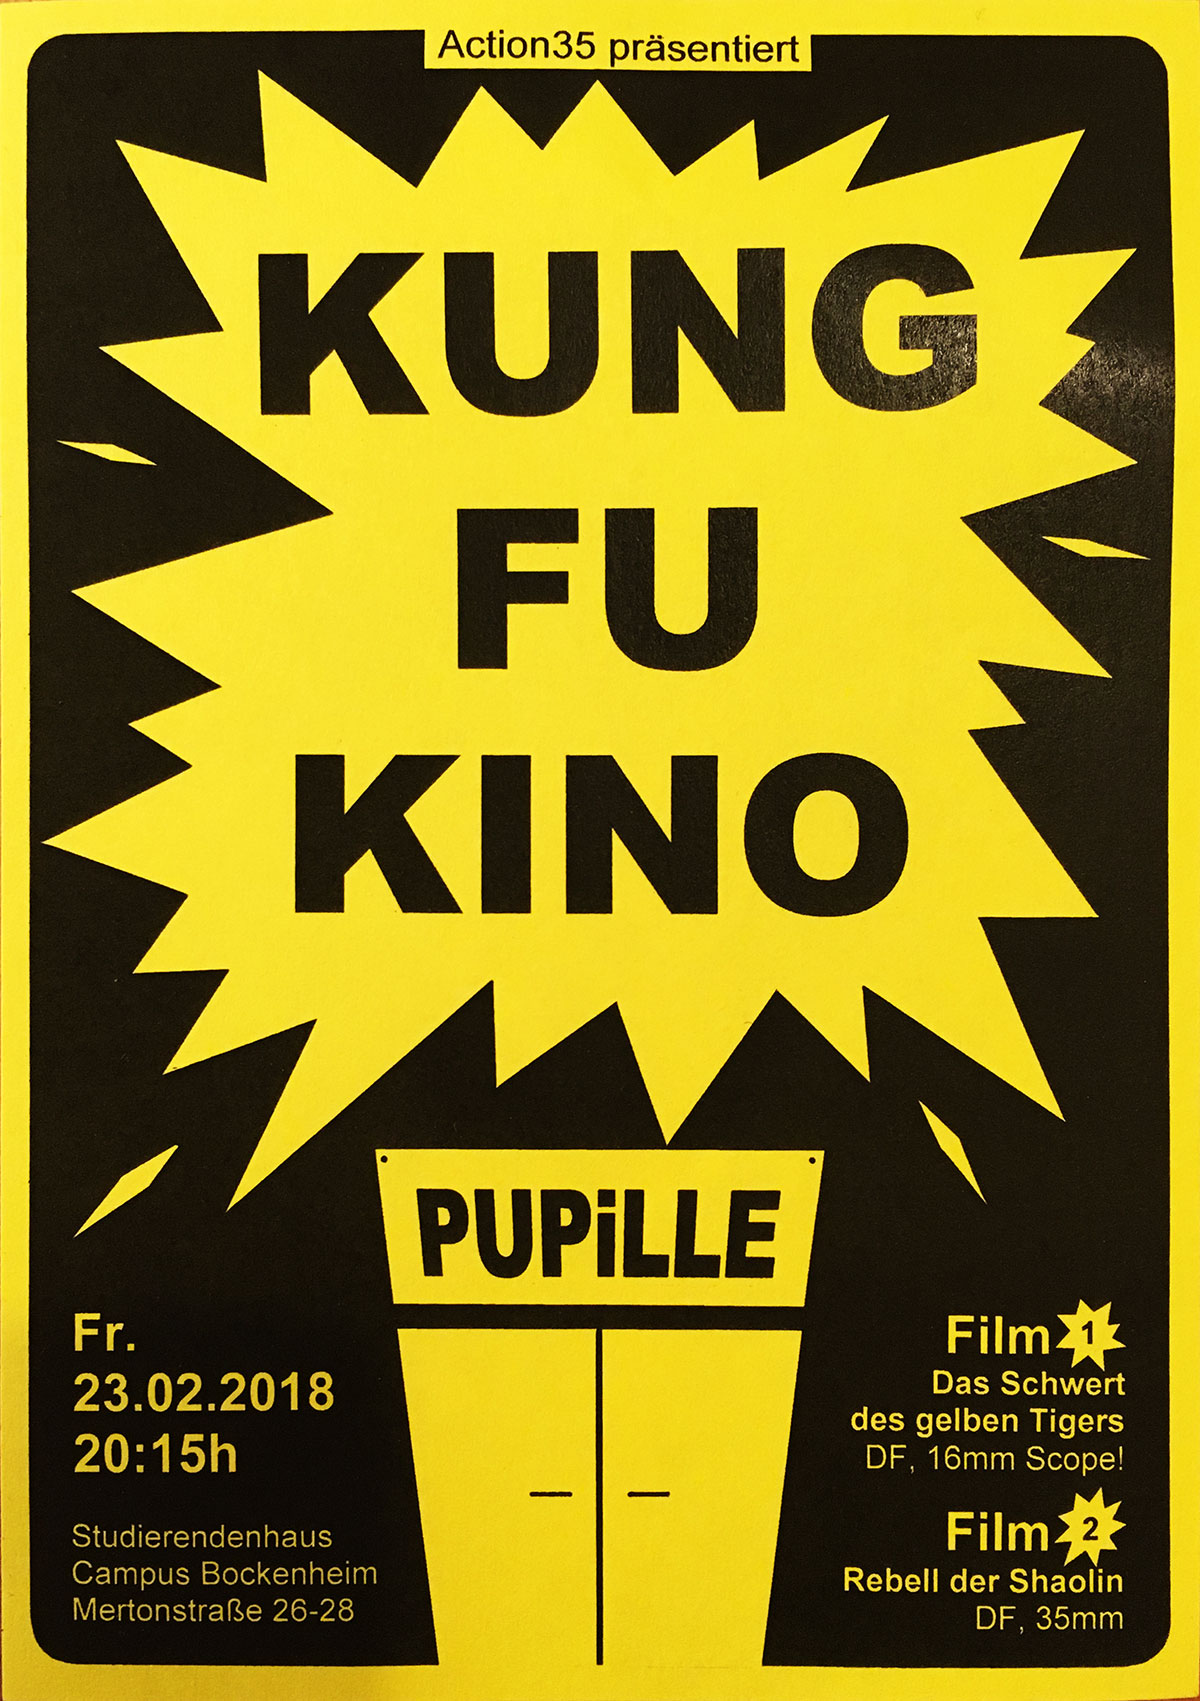 Bild fï¿½r die Veranstaltung Kung Fu Kino